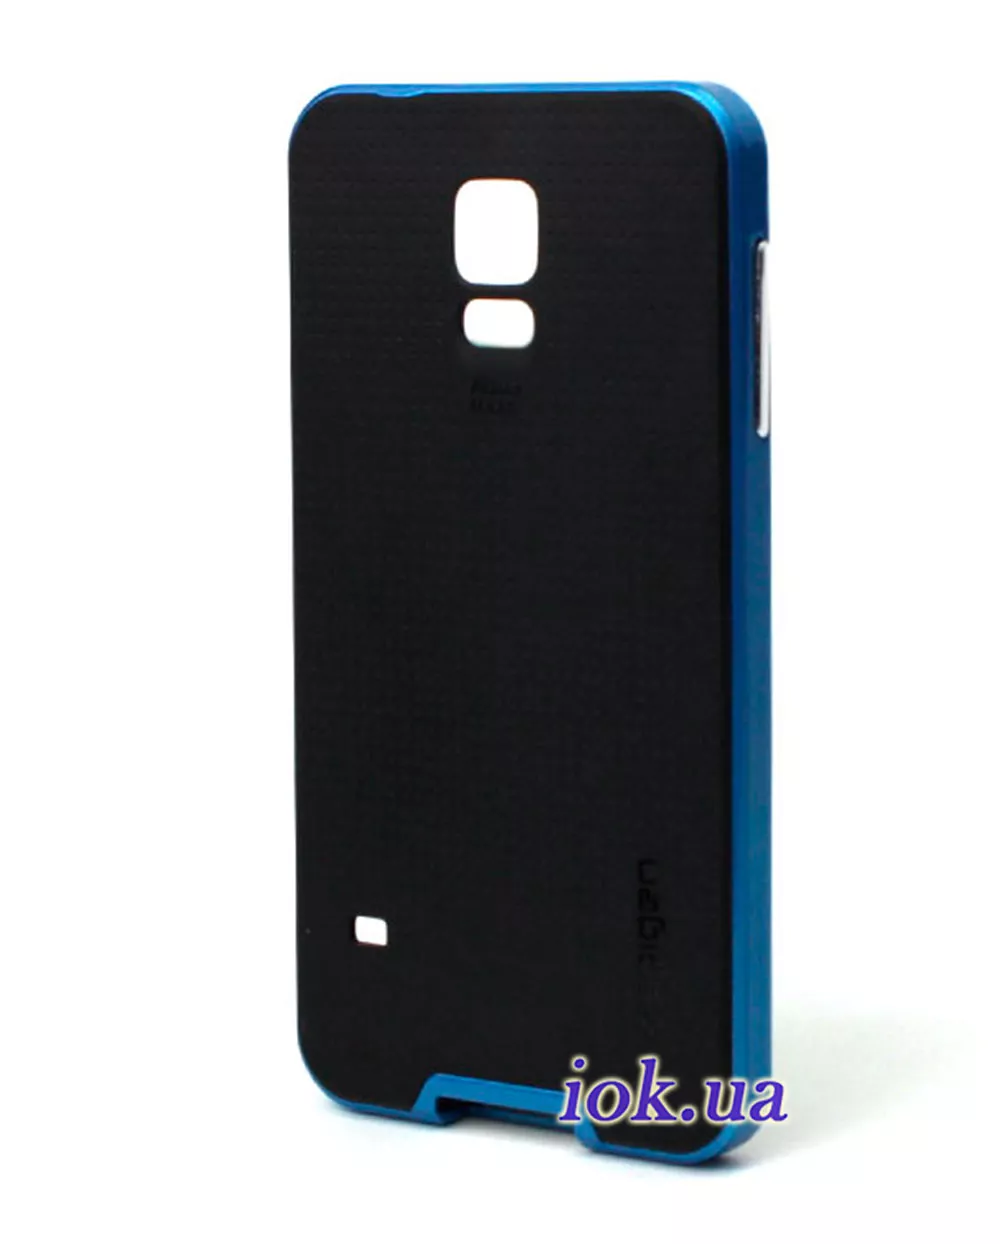 Чехол Spigen Neo Hybrid для Galaxy S5, синий